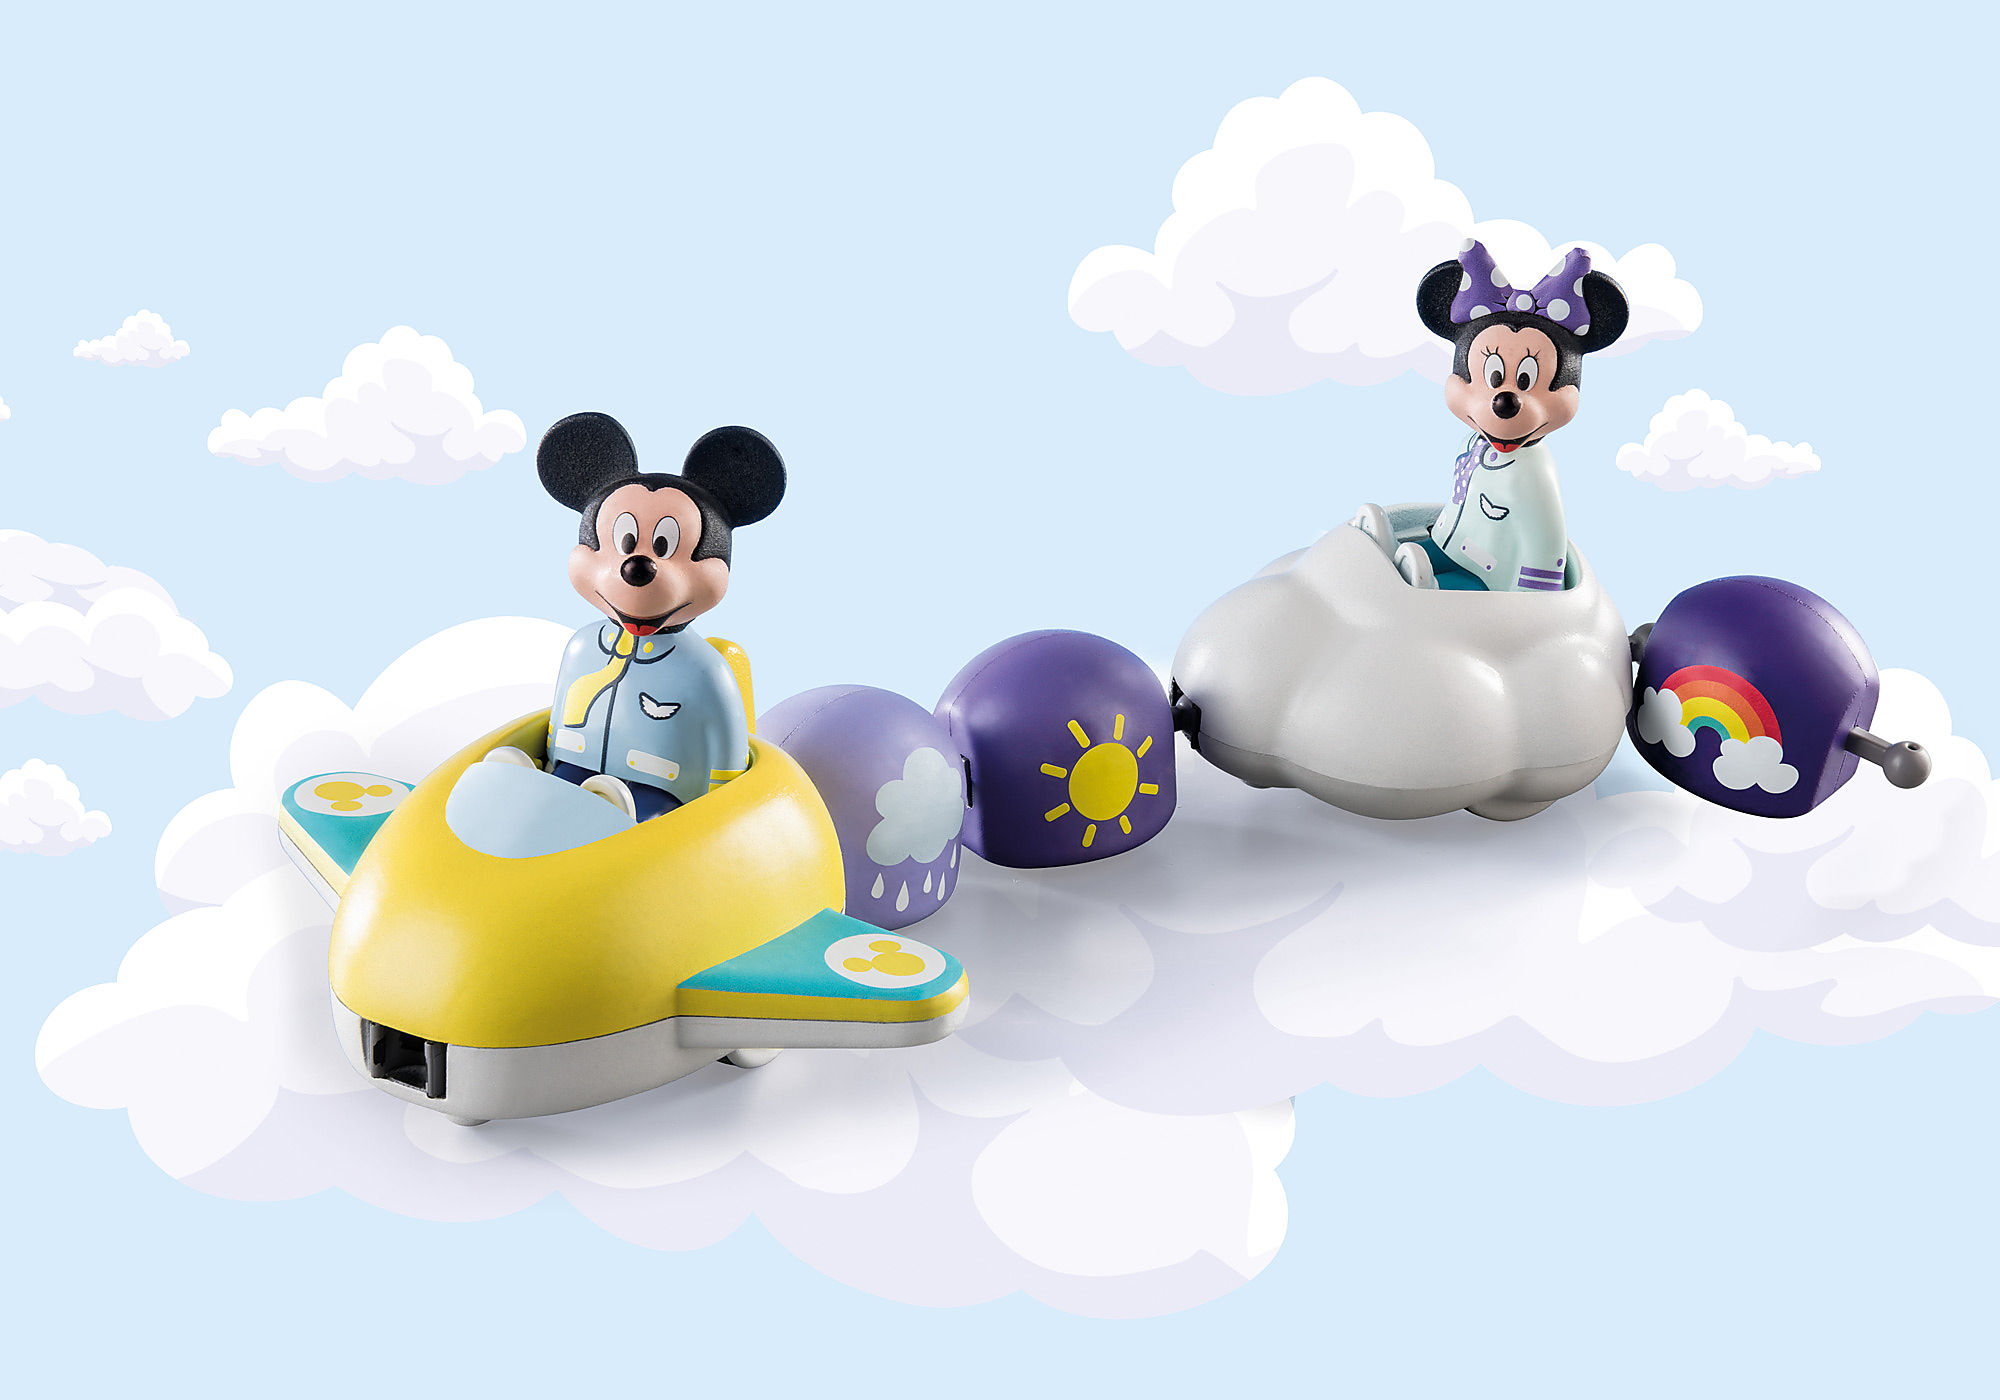 1.2.3 & Disney: Mickey's & Minnie's - 71320